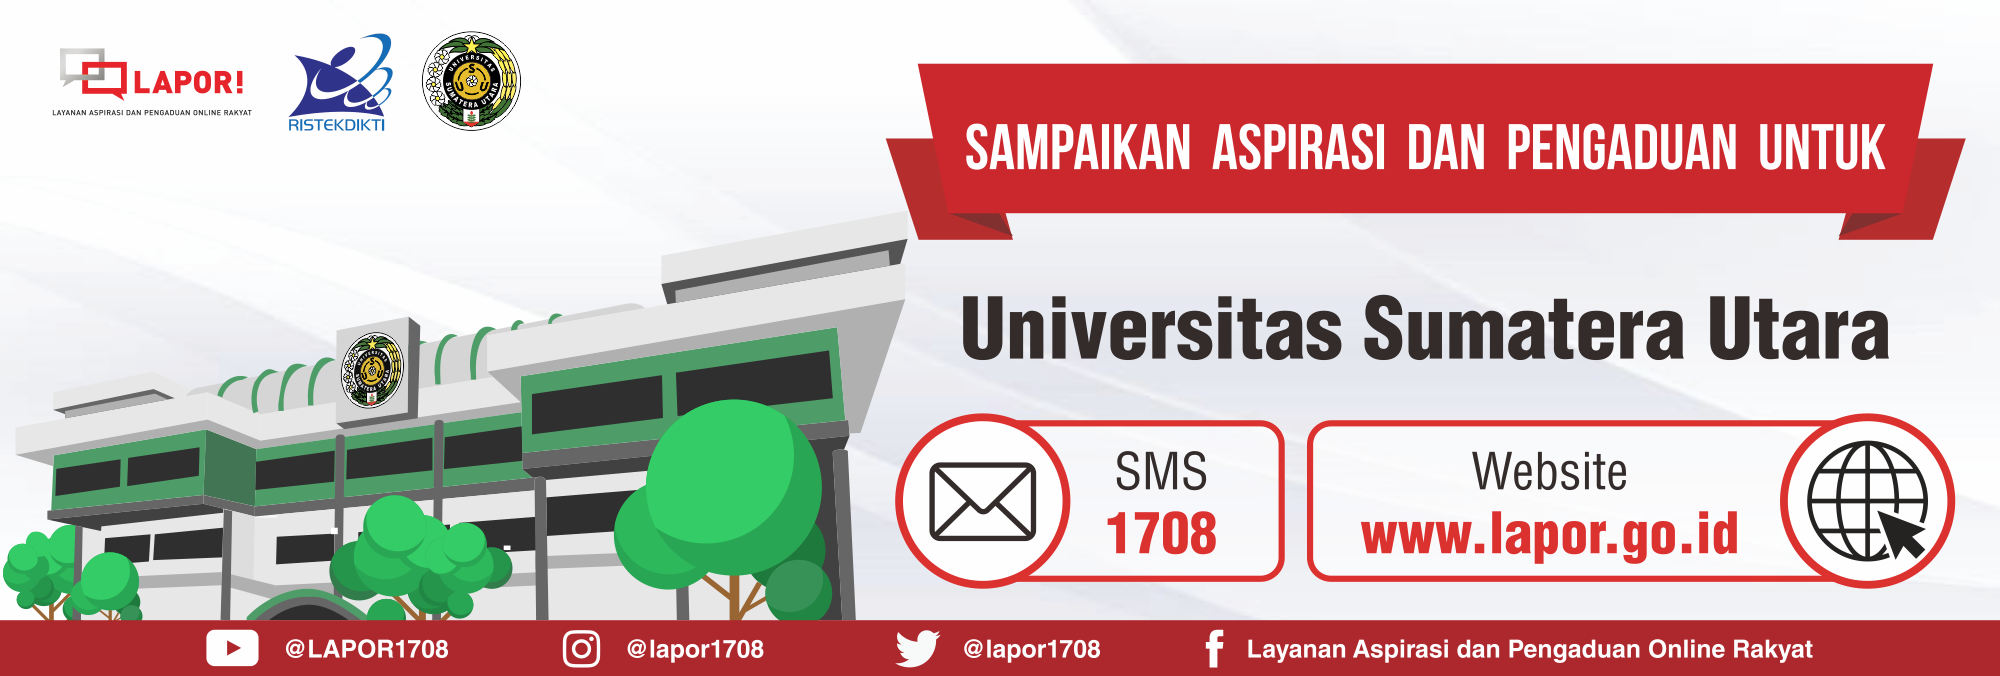 Sampaikan Aspirasi dan Pengaduan Anda untuk Universitas Sumatera Utara